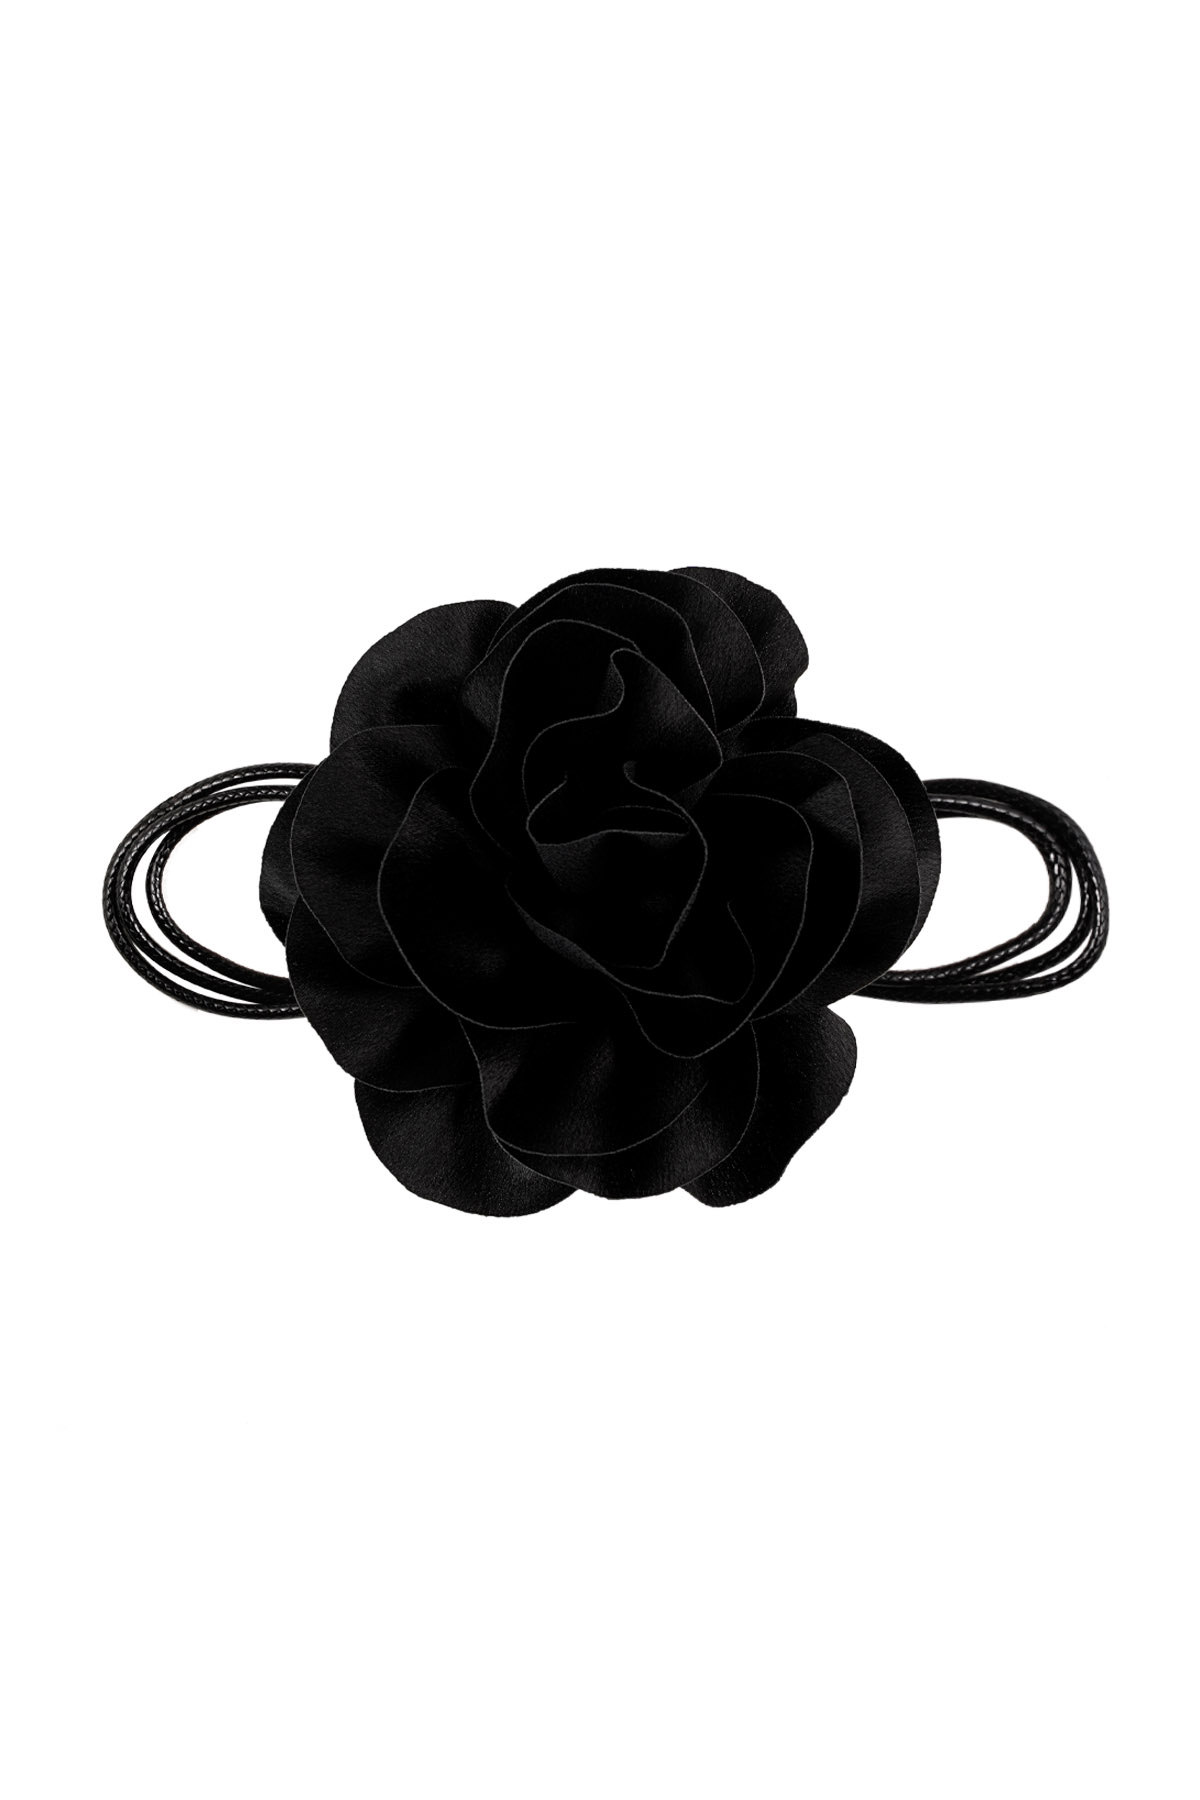 Collier corde fleur brillant - noir 